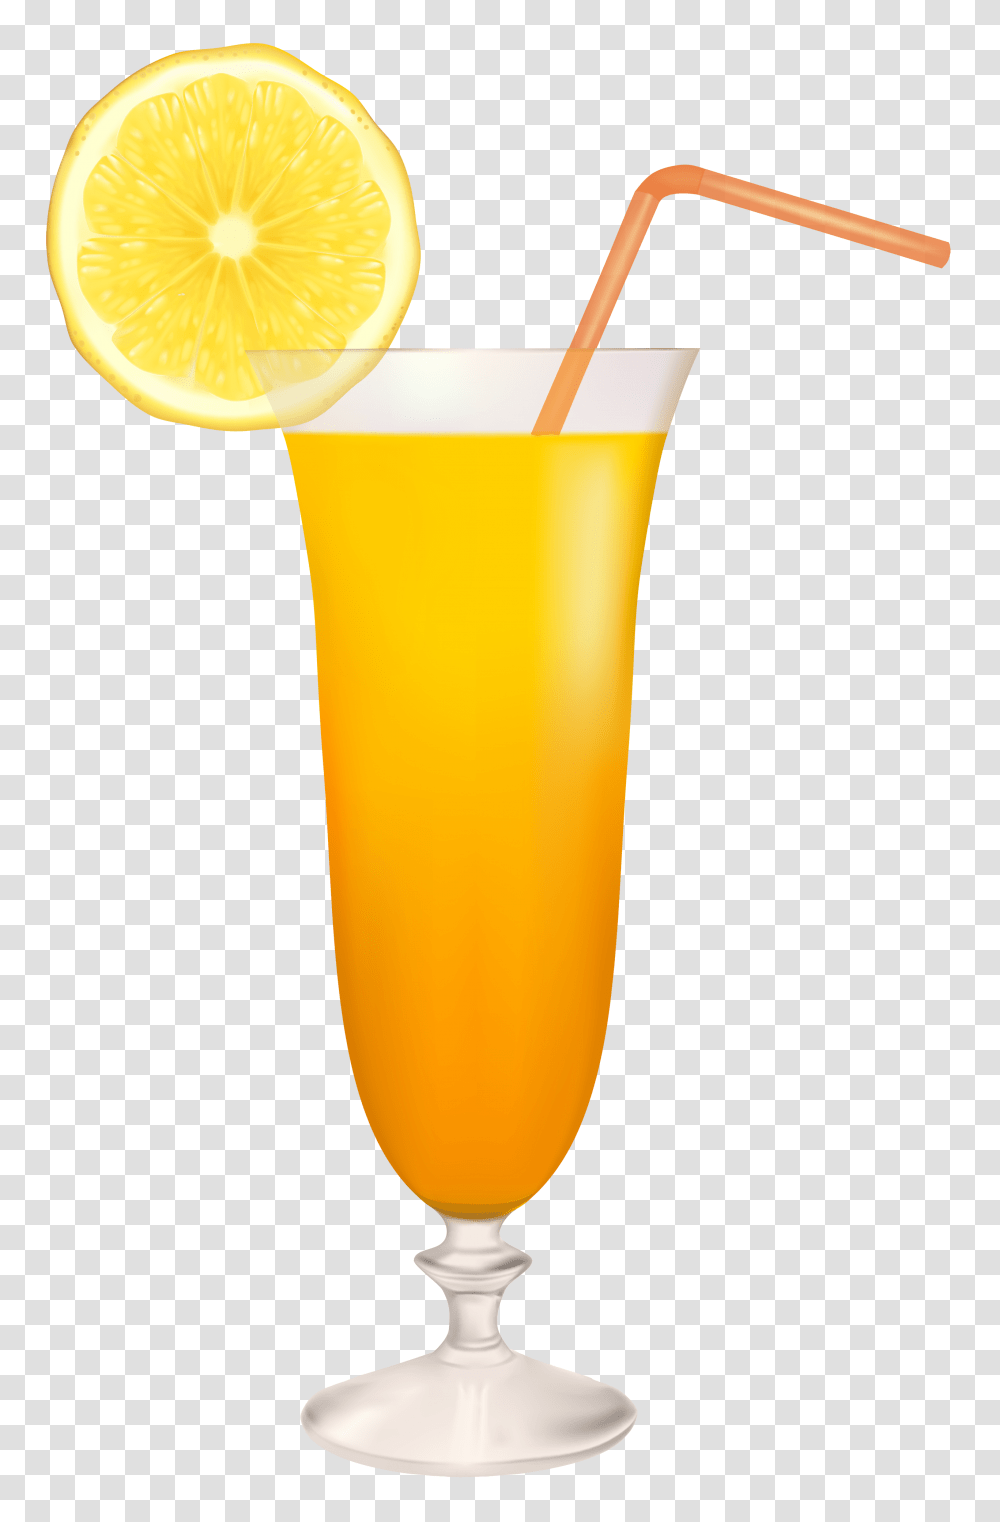 Cocktail Drink With Lemon Slice, Juice, Beverage, Lamp, Orange Juice Transparent Png